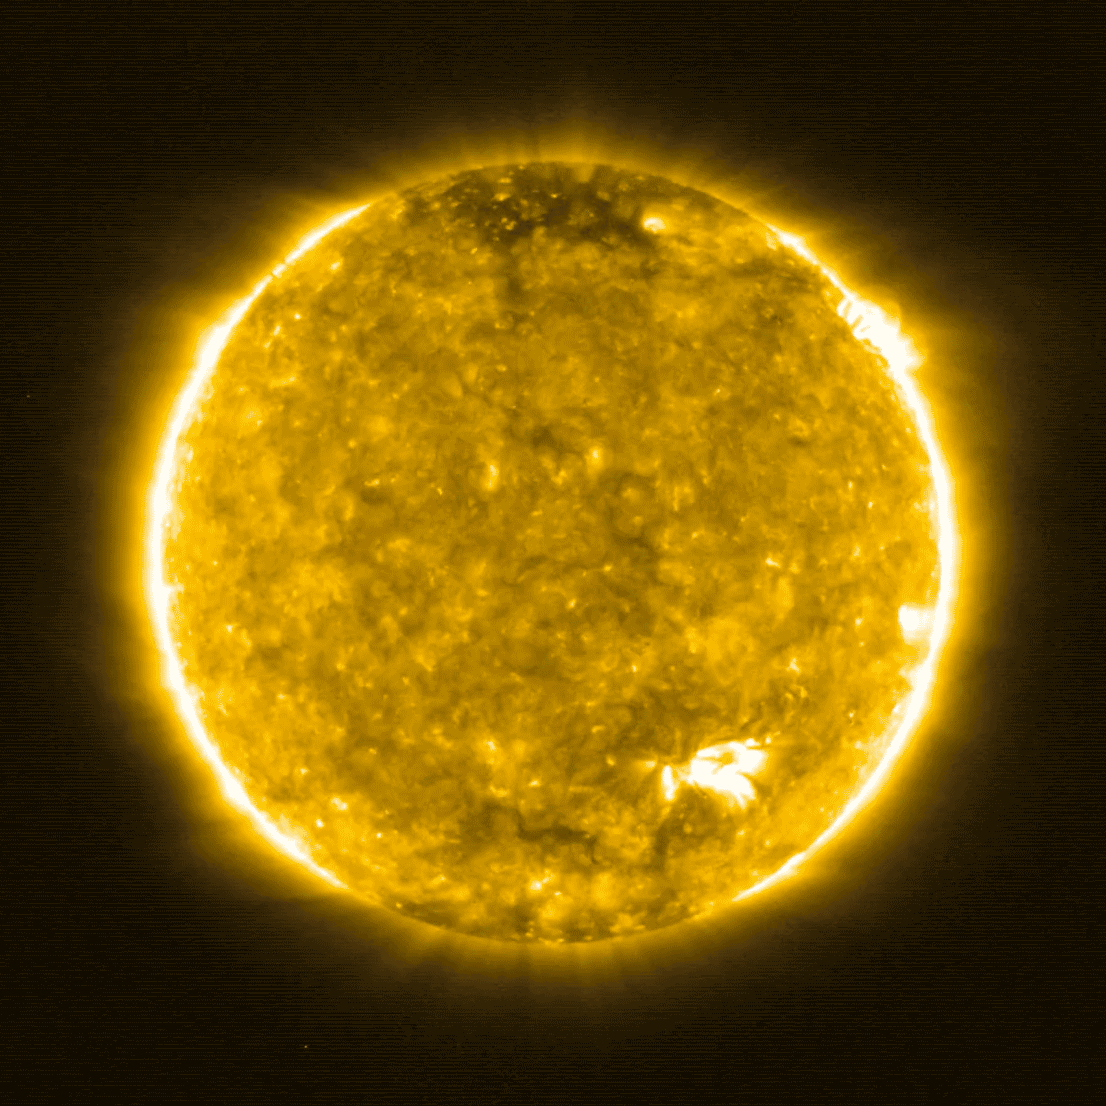 人类史上最近距离太阳照片公布科学家从中发现了惊人细节